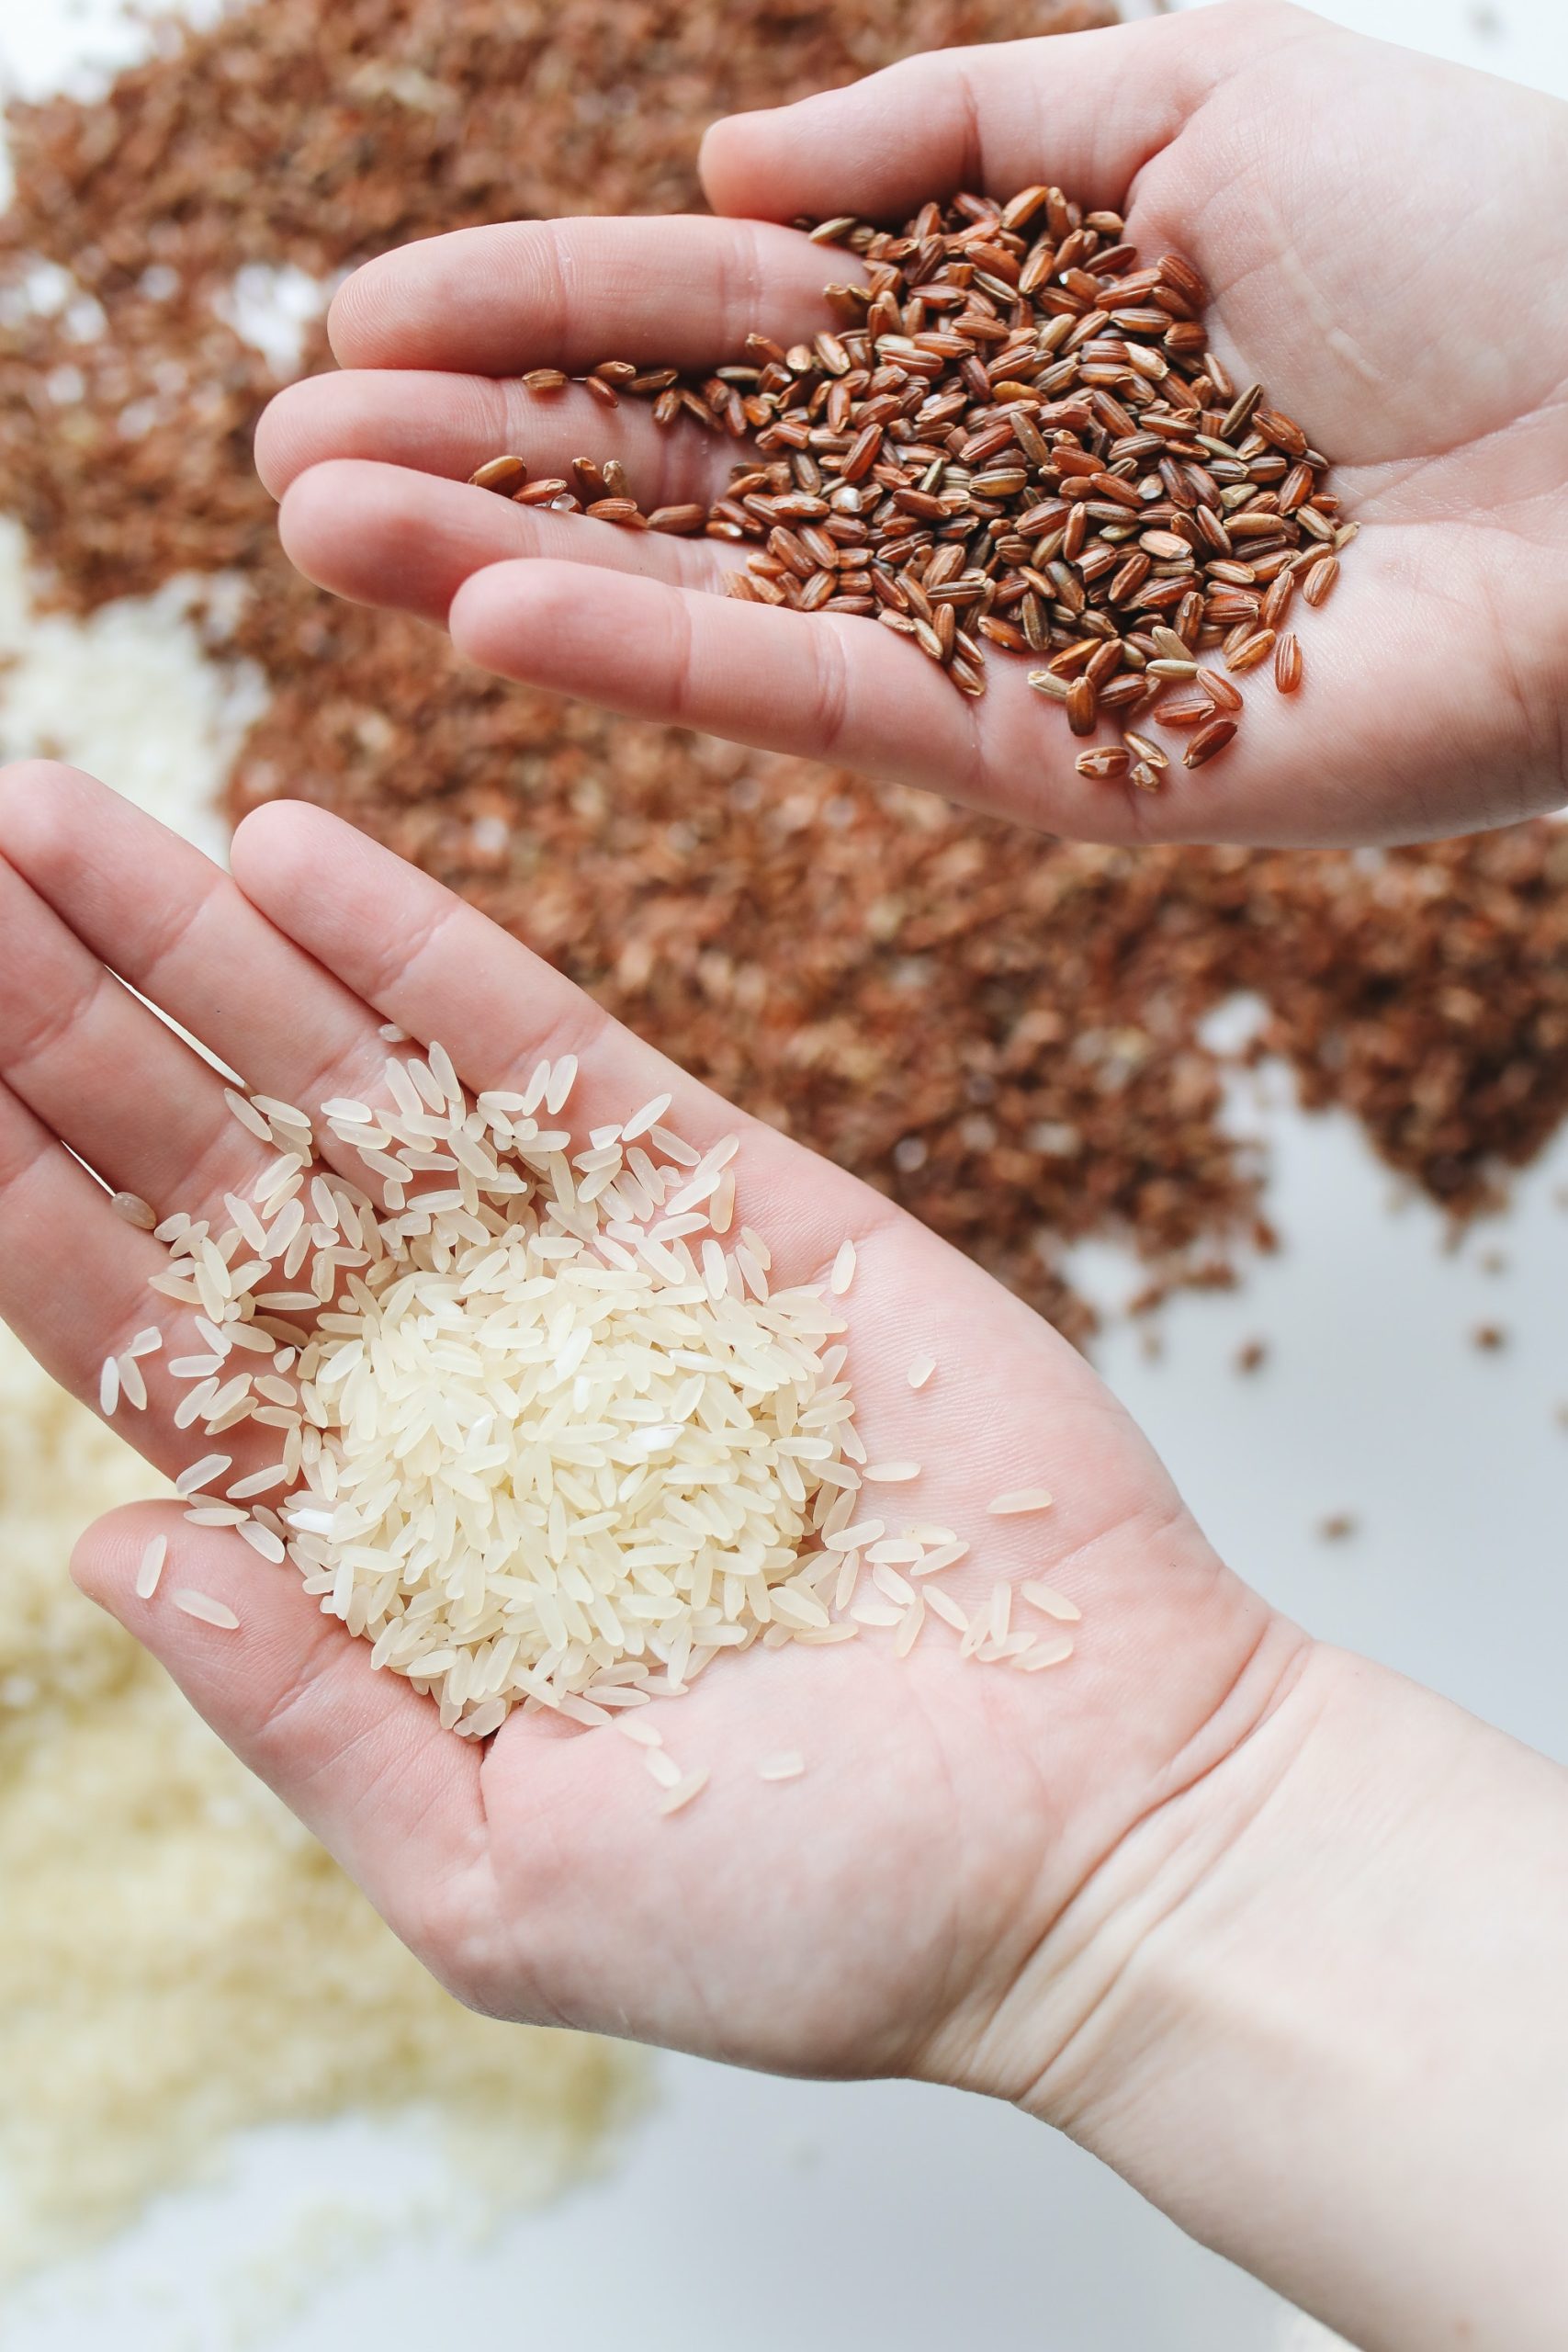 instant rice vs regular rice